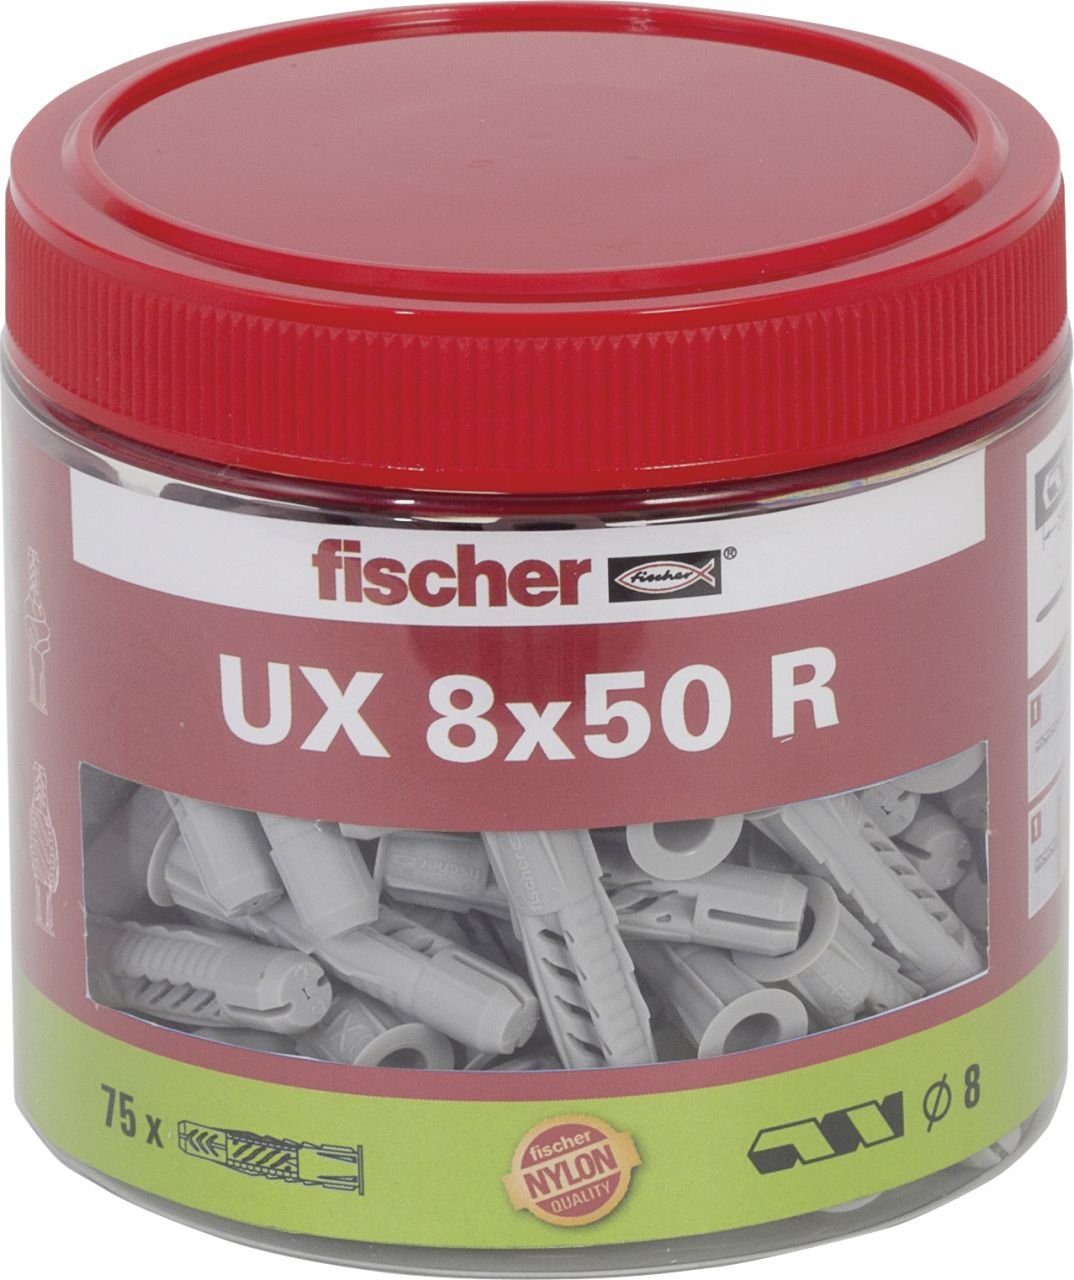 Fischer Befestigungstechnik fischer Schrauben- und Dübel-Set Fischer Universaldübel UX 8.0 x 50 mm - 75 Stück